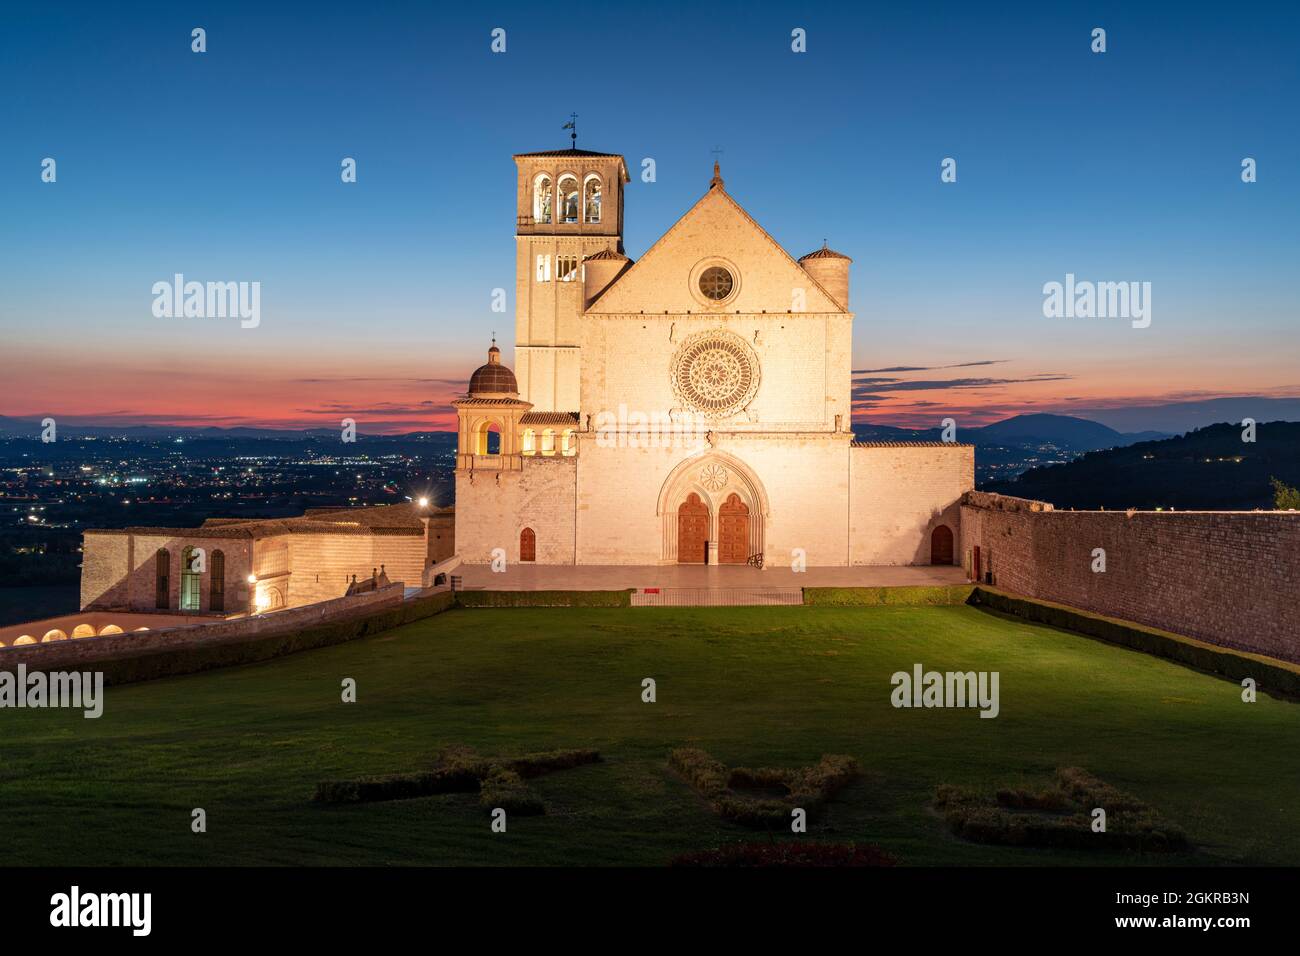 Façade de la basilique San Francesco d'Assisi, site classé au patrimoine mondial de l'UNESCO, et jardins au crépuscule, Assise, province de Pérouse, Ombrie, Italie, Europe Banque D'Images